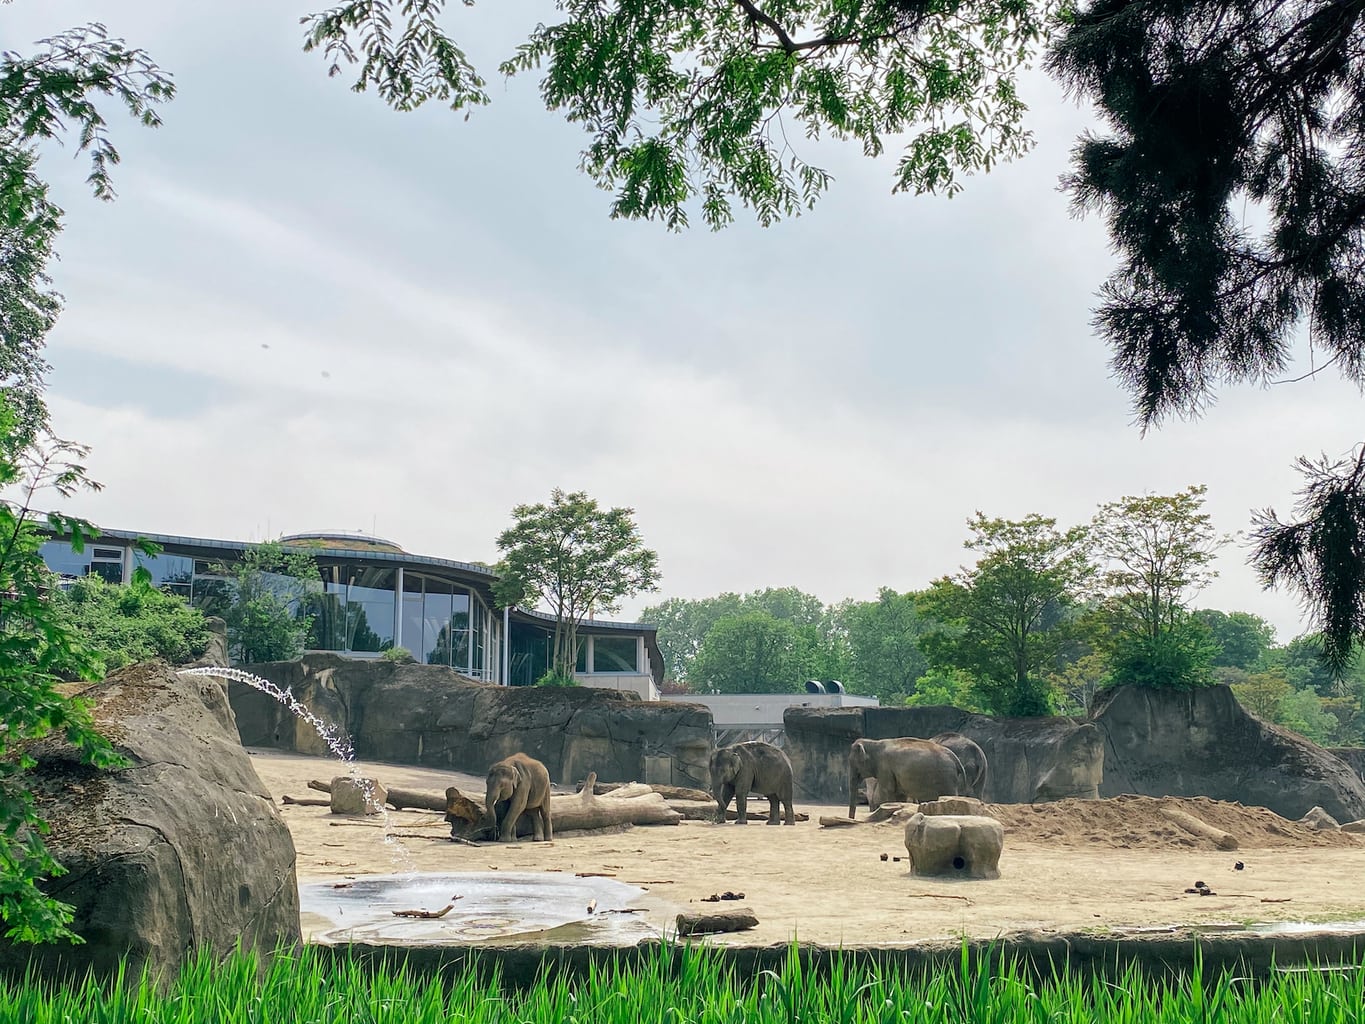 Het olifantenhuis van de zoo in Keulen